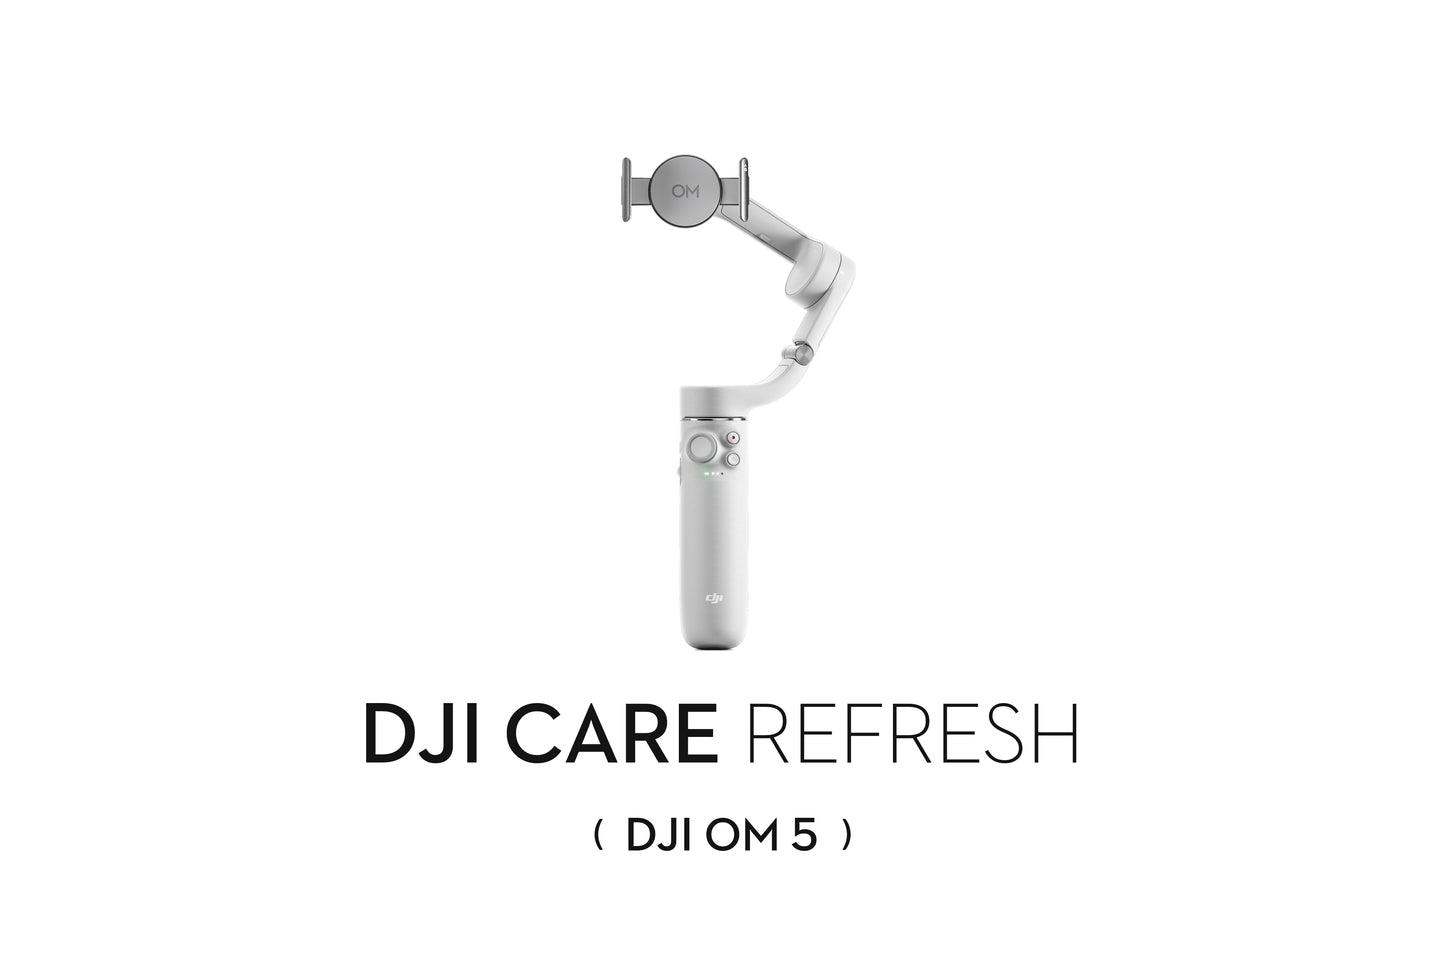 DJI Care Refresh for DJI OM 5